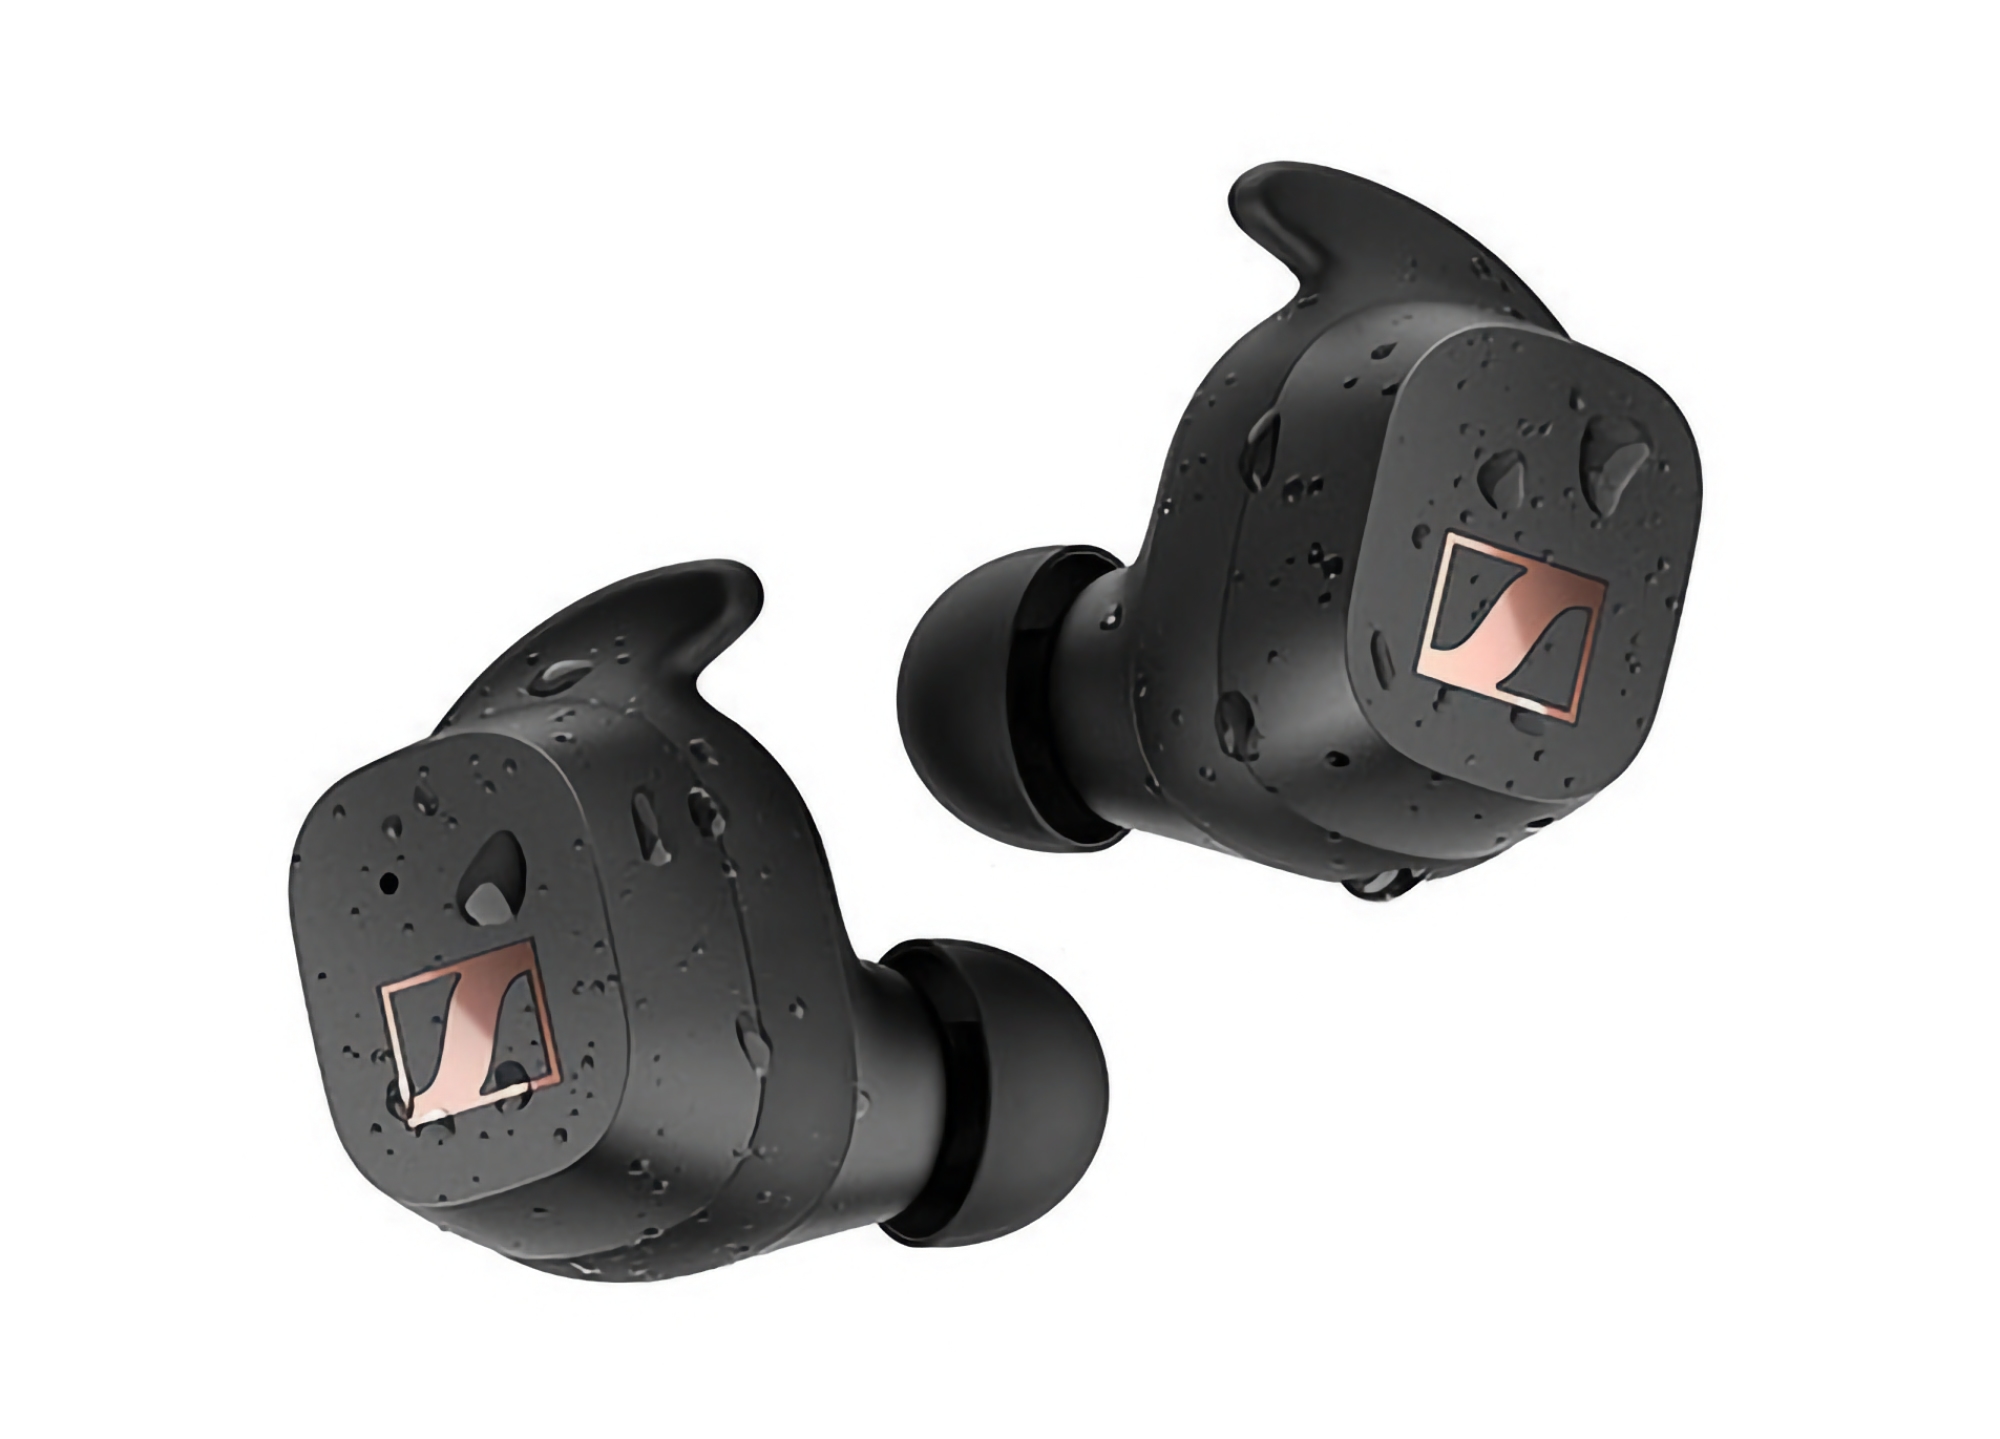 Sennheiser Sport True Wireless auf Amazon: TWS-Kopfhörer mit IP54-Schutz und bis zu 27 Stunden Akkulaufzeit mit 50 $ Rabatt